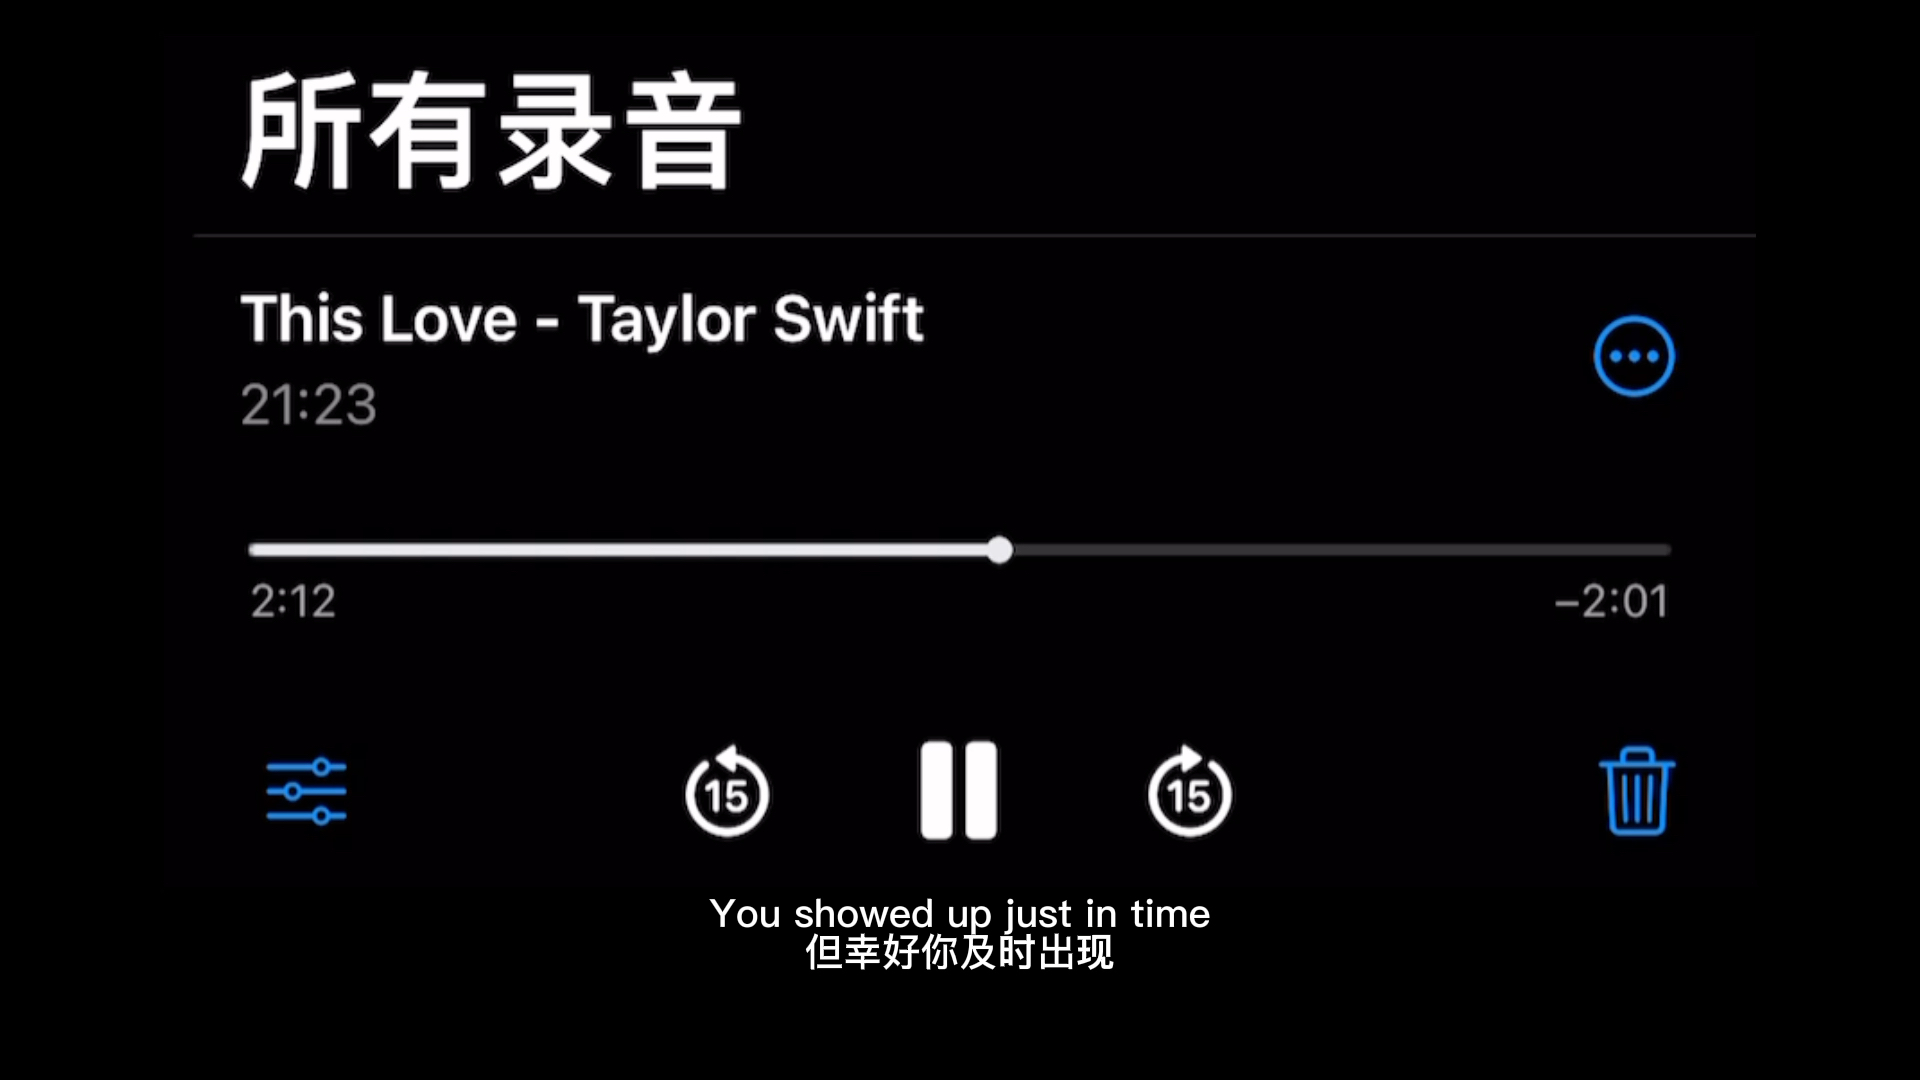 【翻唱】This Love - Taylor Swift